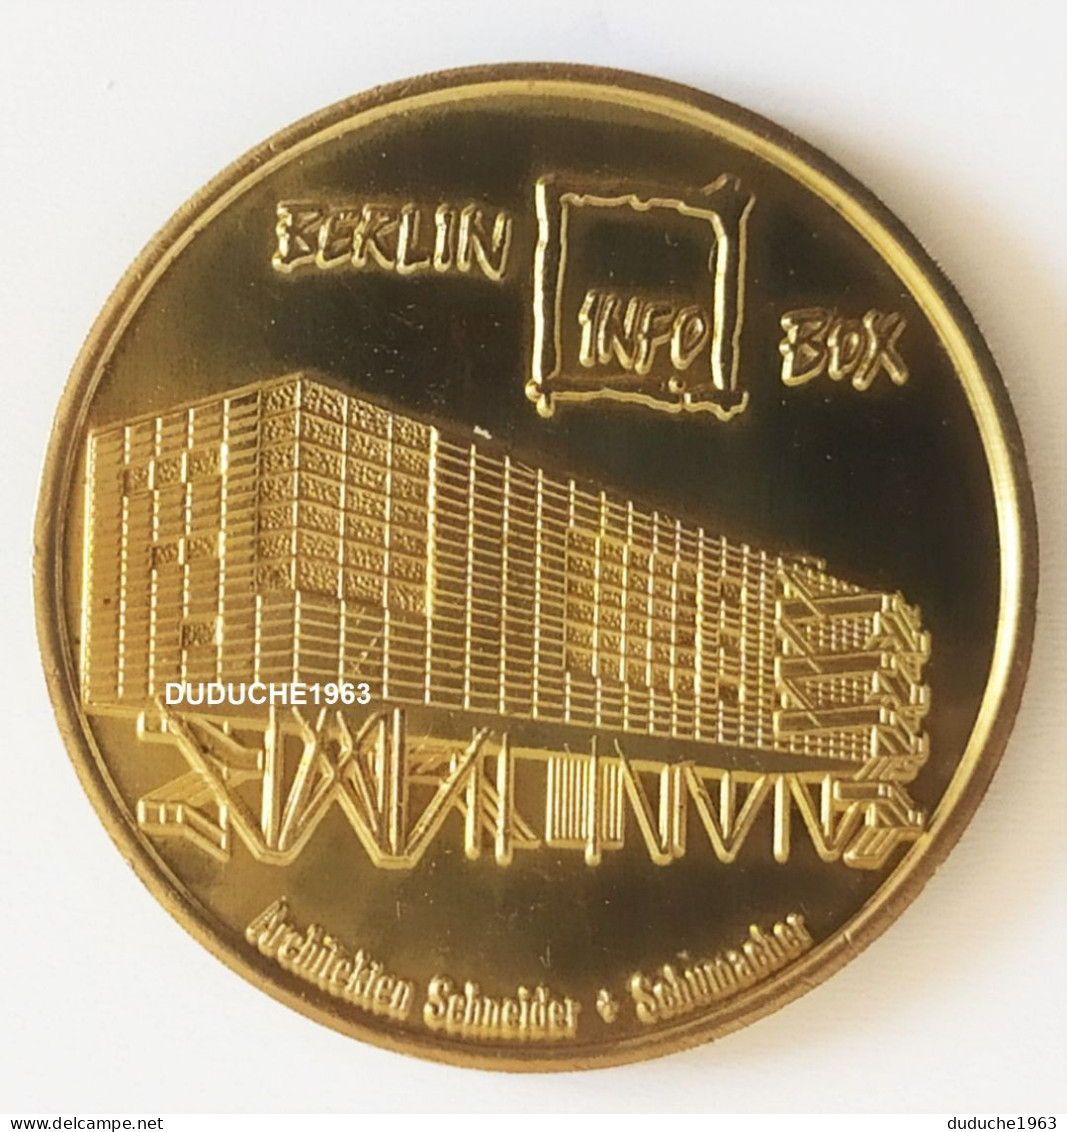 Monnaie De Paris. Allemagne - Berlin - Globe Taler Infobox Fernsehturm 1997/1998 - Zonder Datum